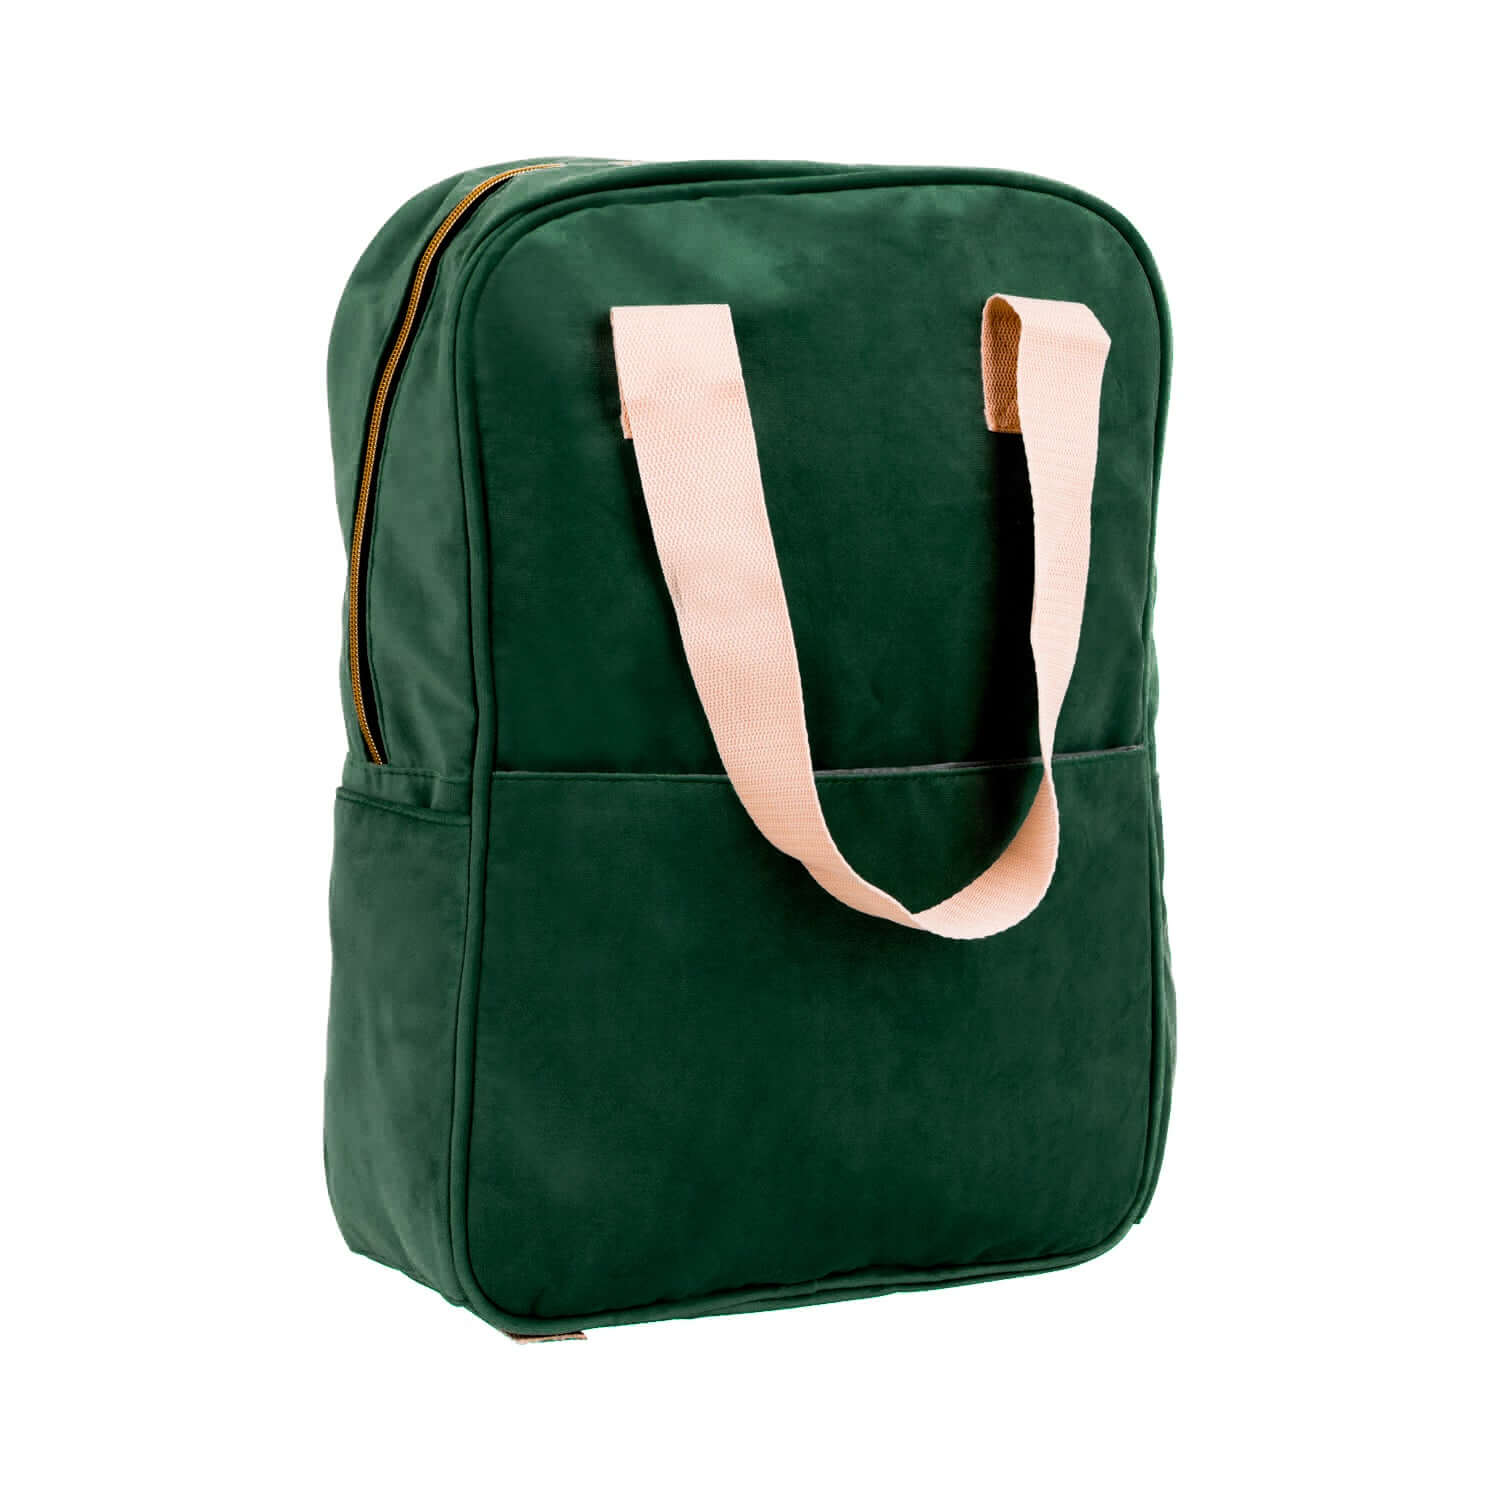 Duży plecak welurowy zielony od Bettys Home przód, plecak do samolotu bagaż podręczny, plecak na laptopa damski